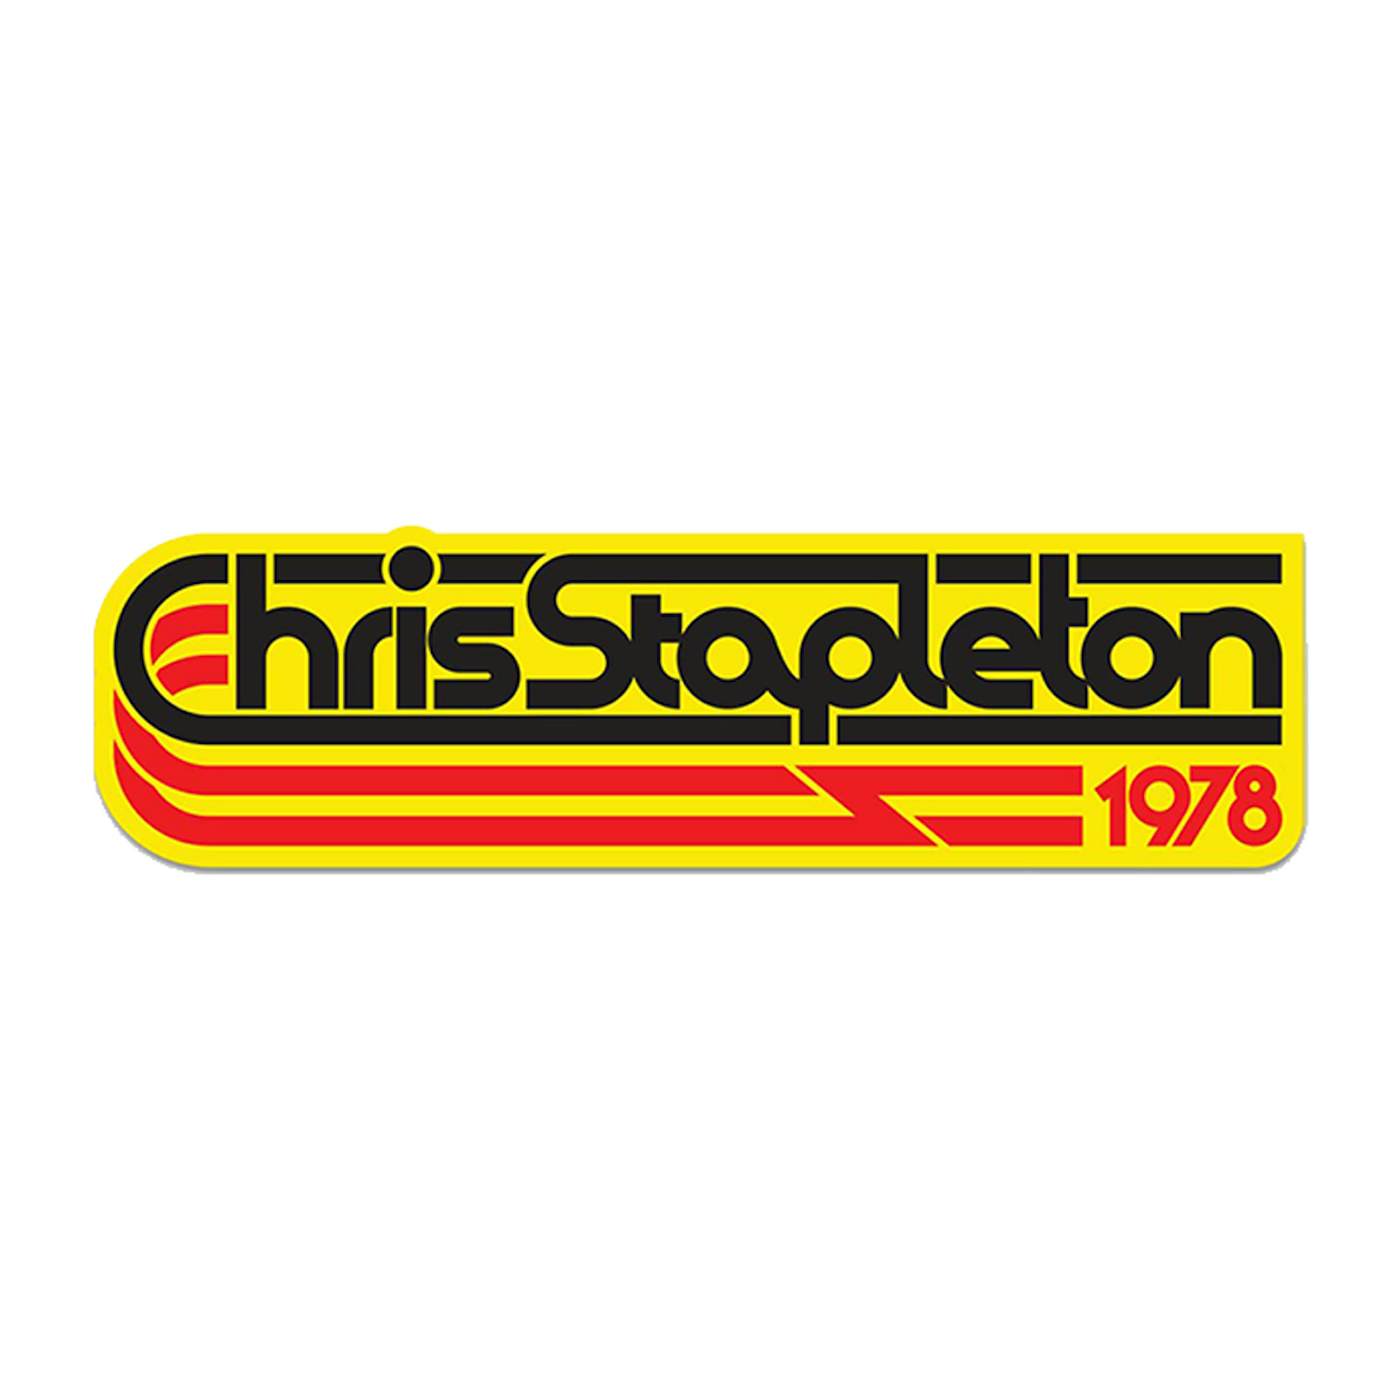 Chris Stapleton Stapleton 1978 Bumper Sticker